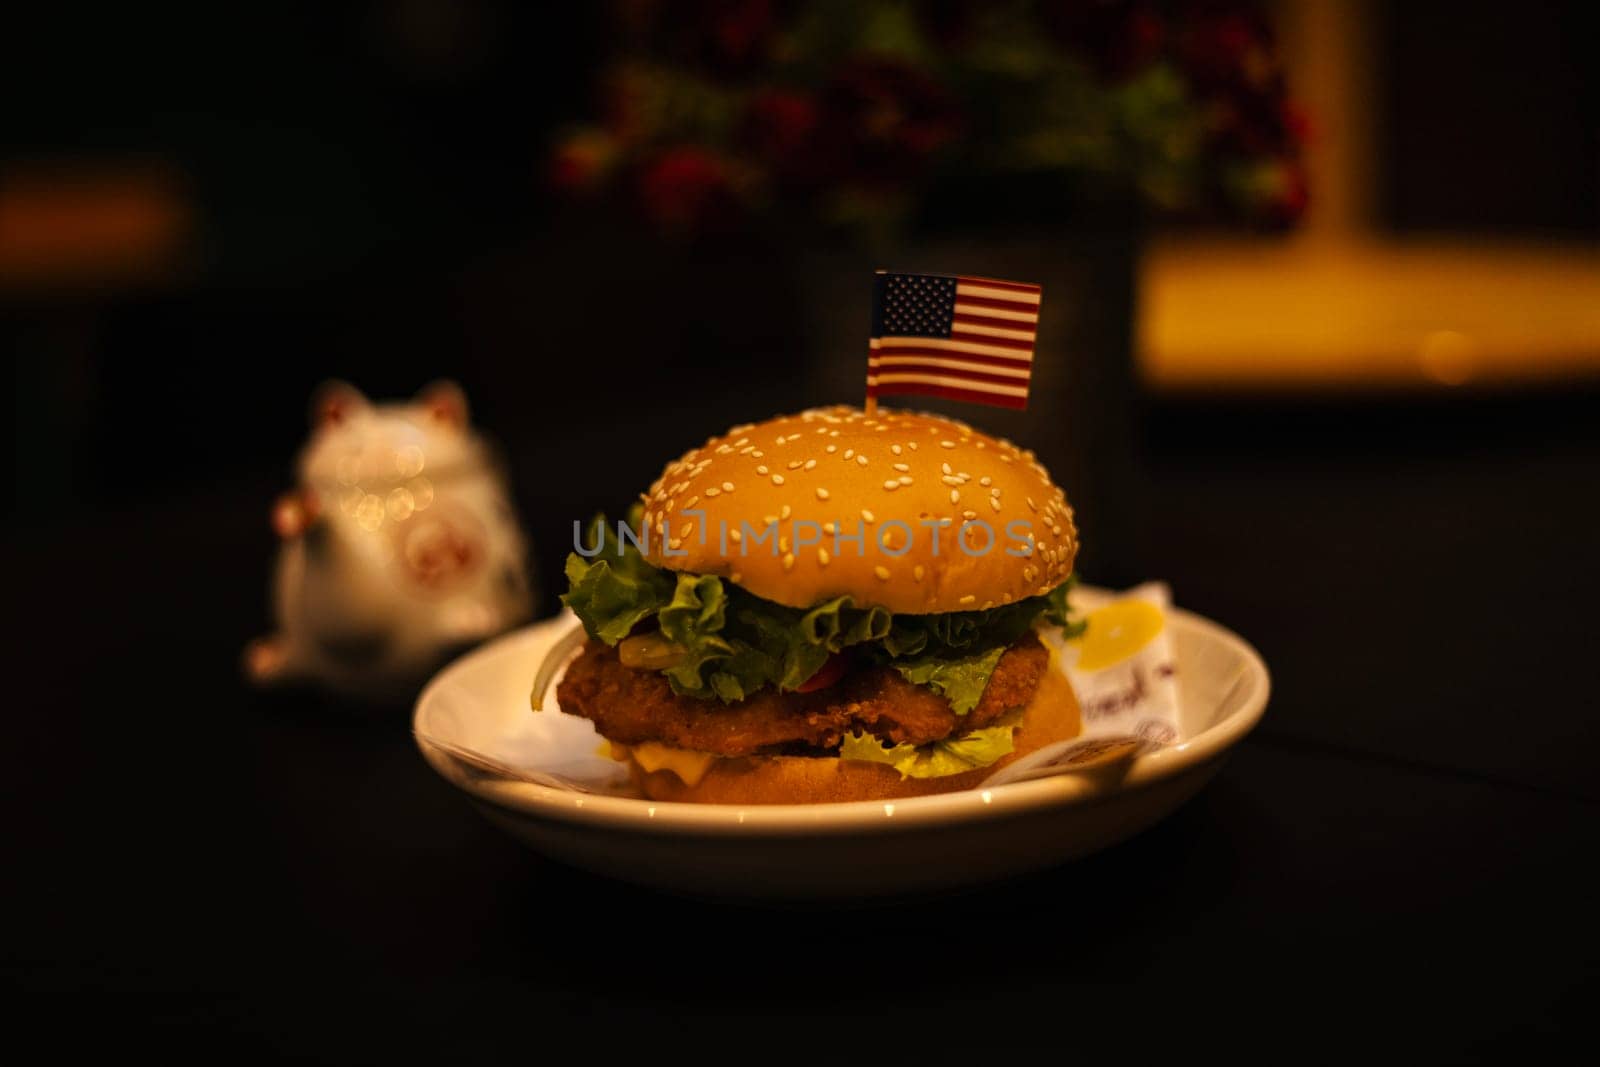 Fried chicken sandwich on a plate on dark background. Hamburger.